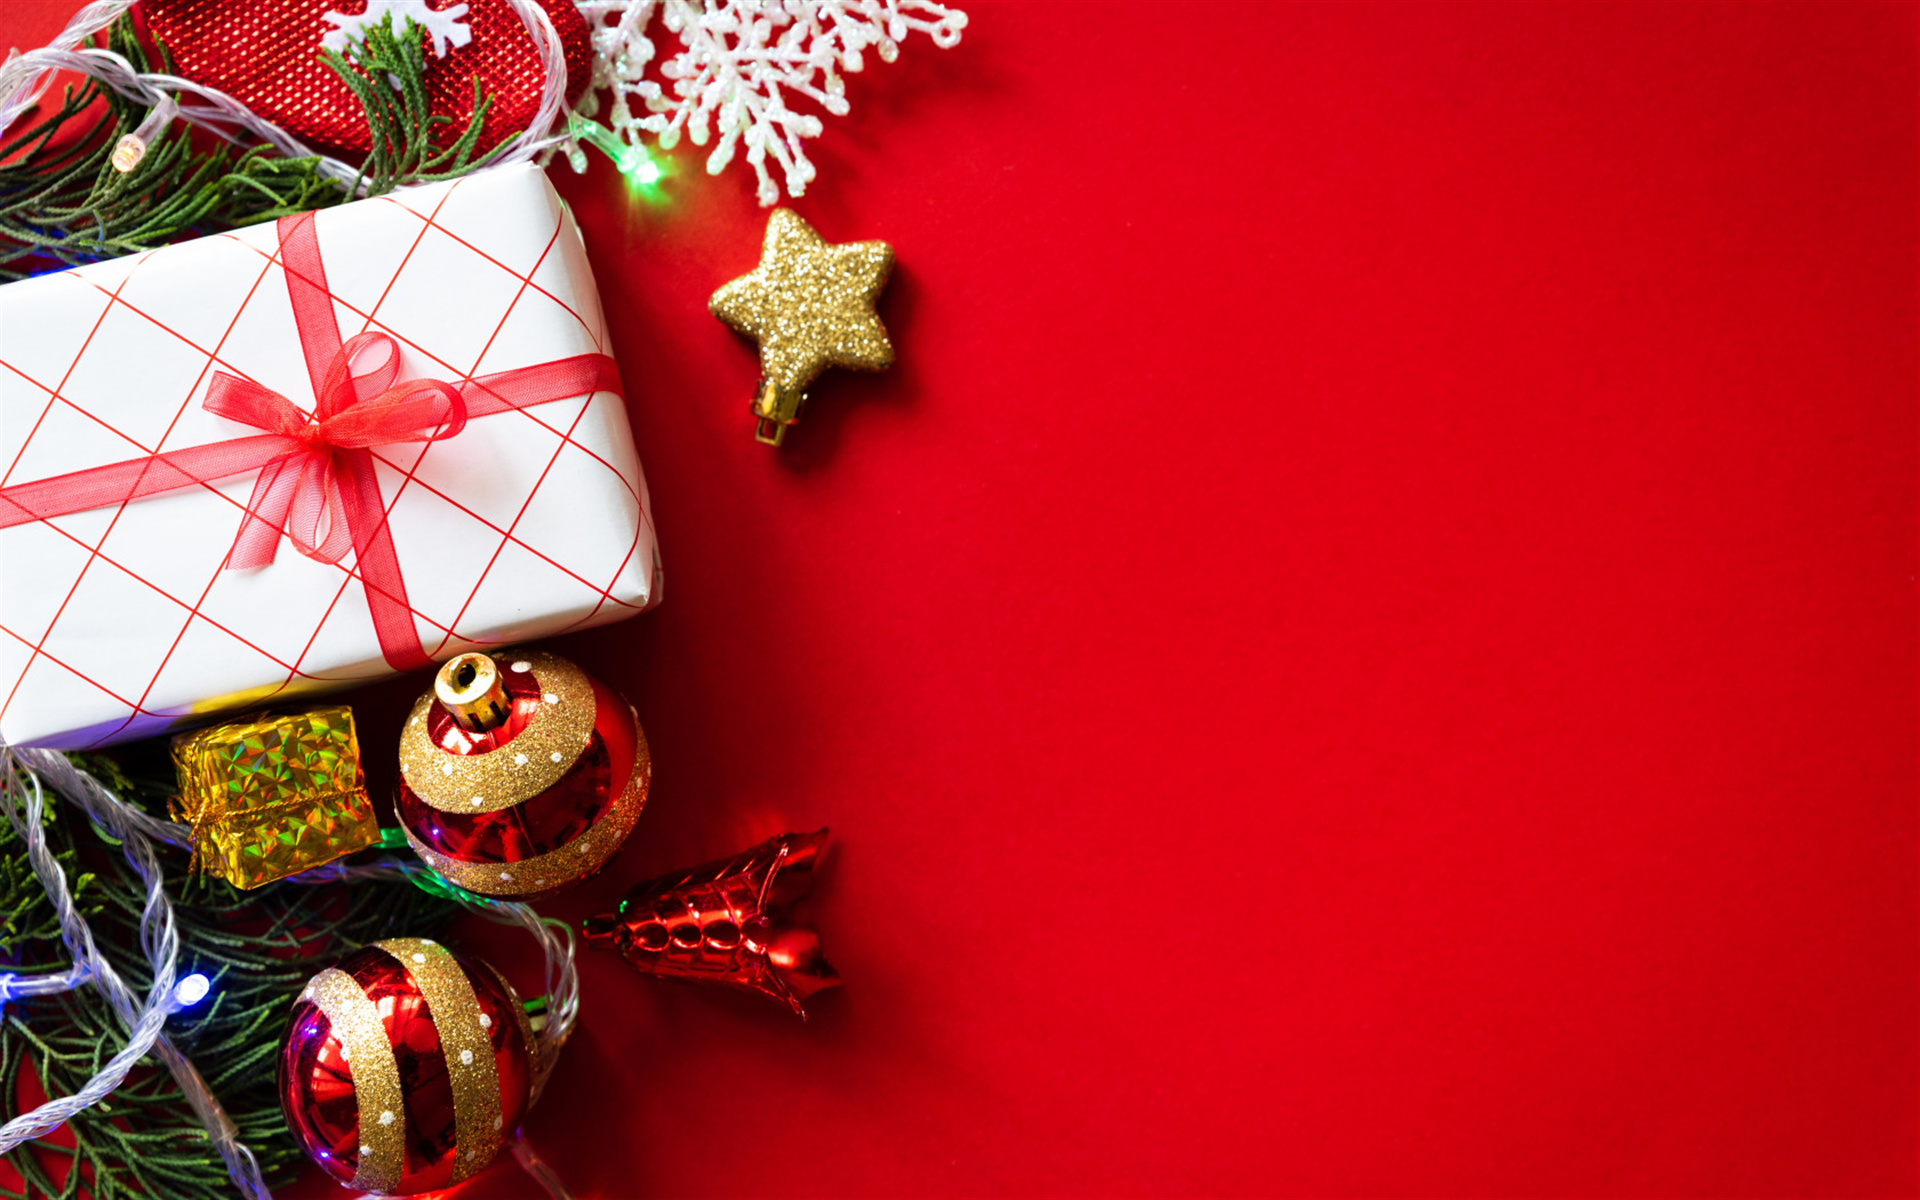 papel pintado natal,decoración navideña,decoración navideña,navidad,envoltorio de regalo,presente